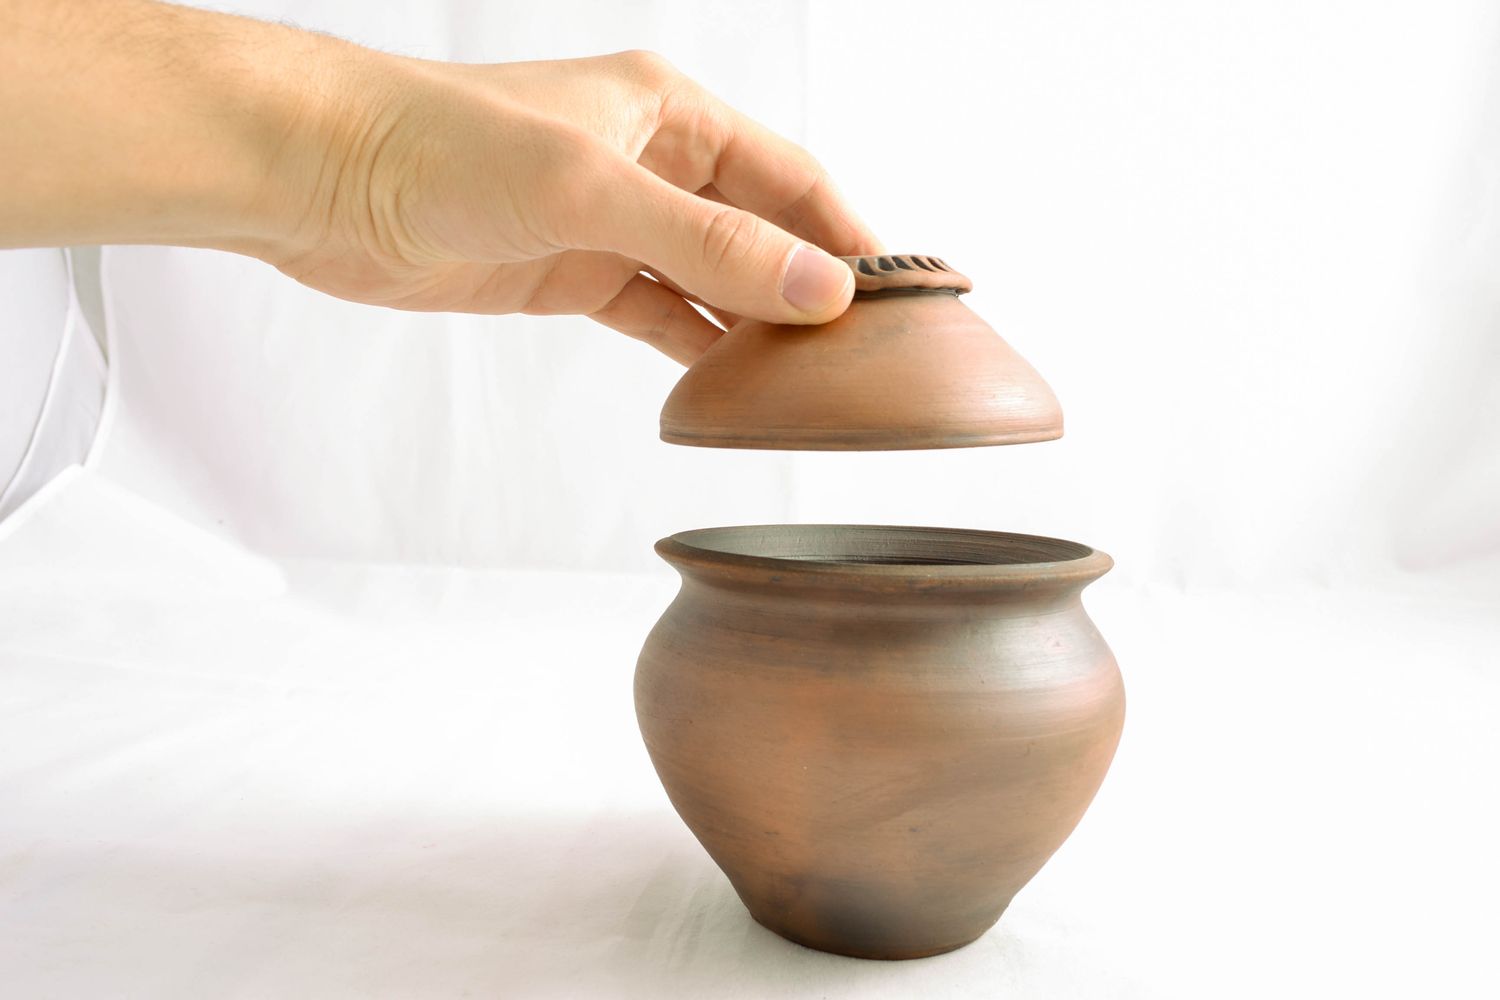 Handmade ceramic pot for baking 1 liter photo 2